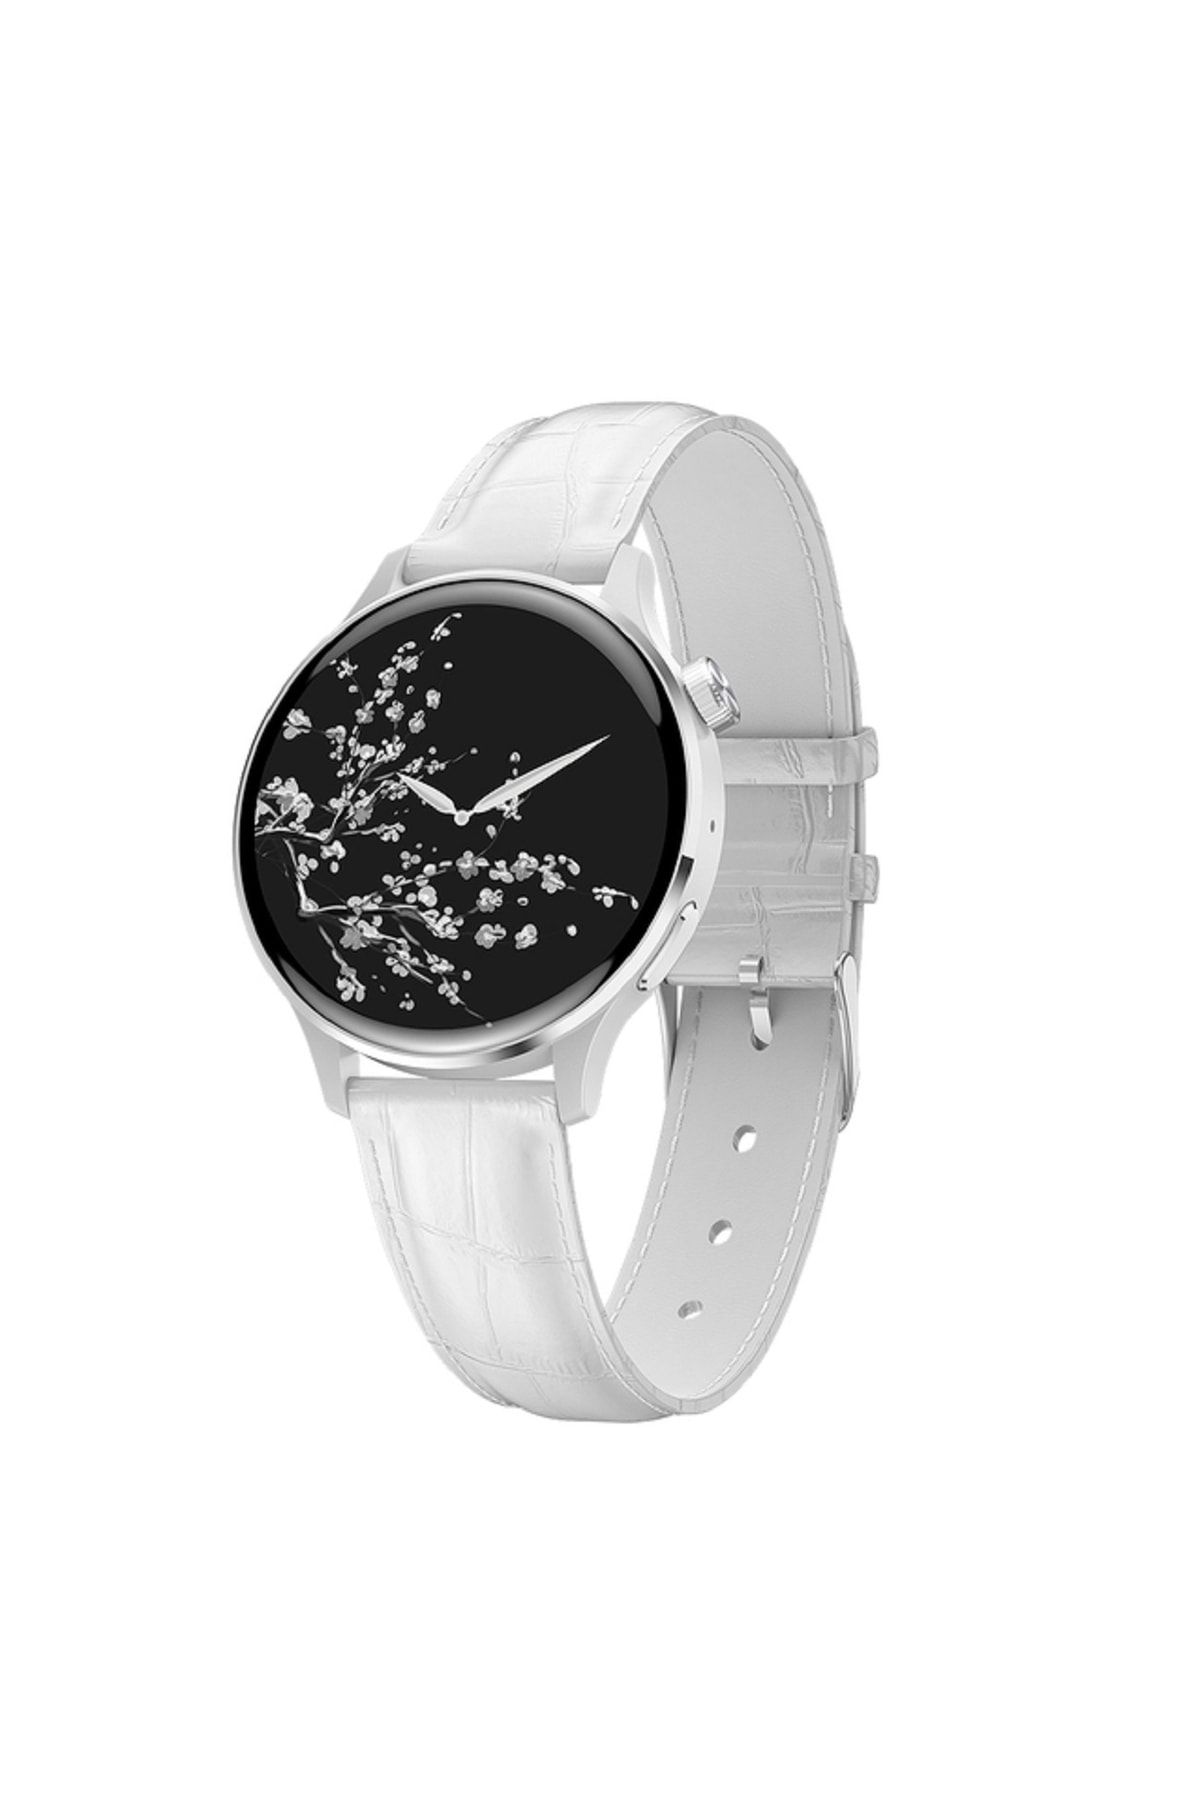 Şıktek Gt3 Mini 38 Mm Smart Watch Akıllı Saat Yuvarlak Akıllı Saat Nfc Özellikli